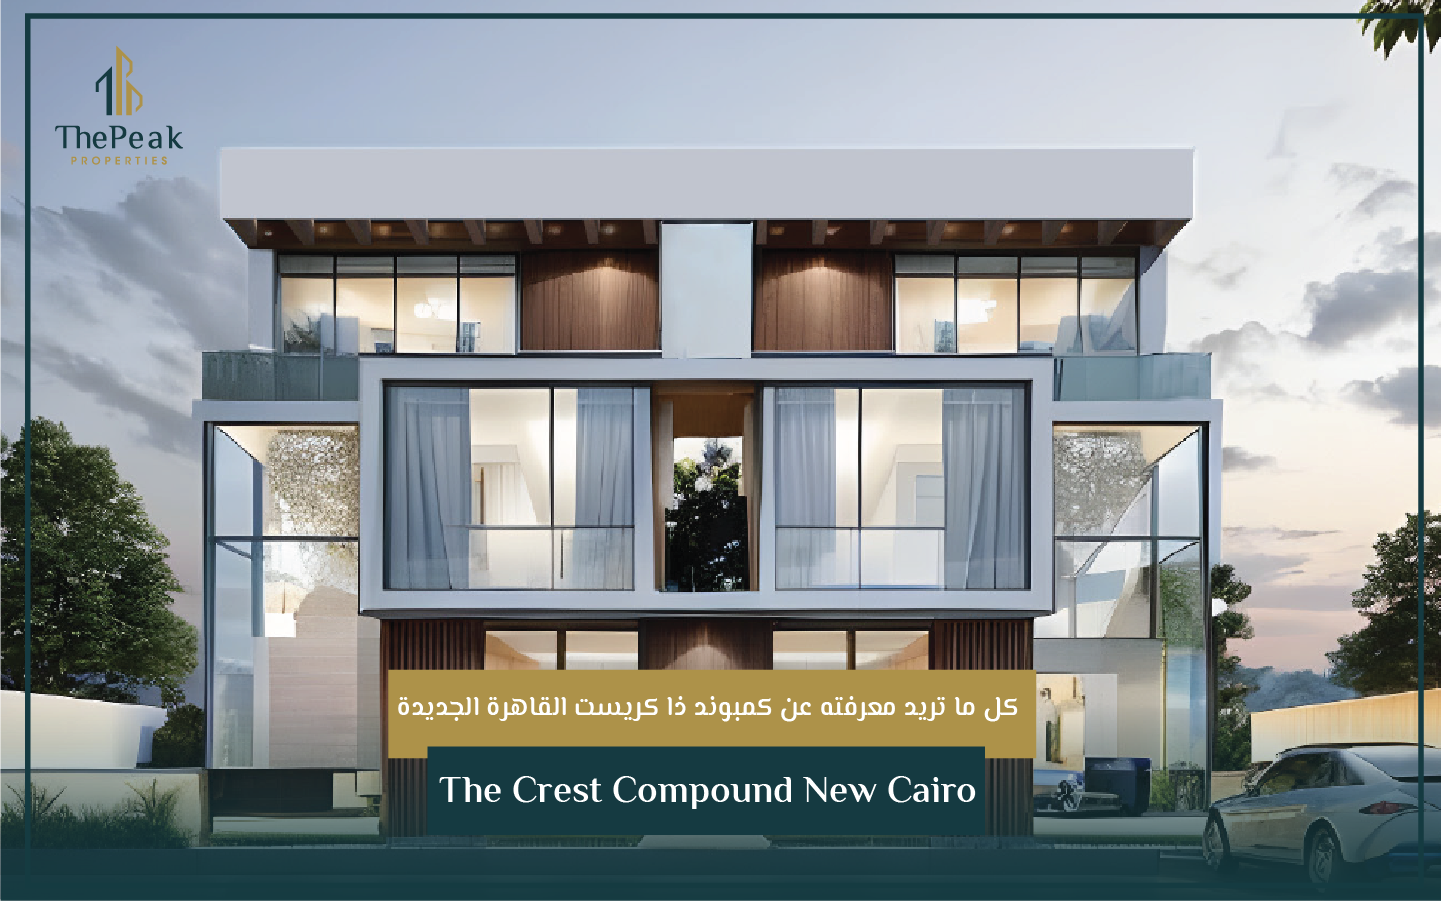 "شقة للبيع بالتقسيط في التجمع الخامس  مساحة 85 متر  مقدم 5 % و تقسيط يصل إلي 7 سنوات  في مشروع The Crest Compound New Cairo" | THE PEAK PROPERTIES